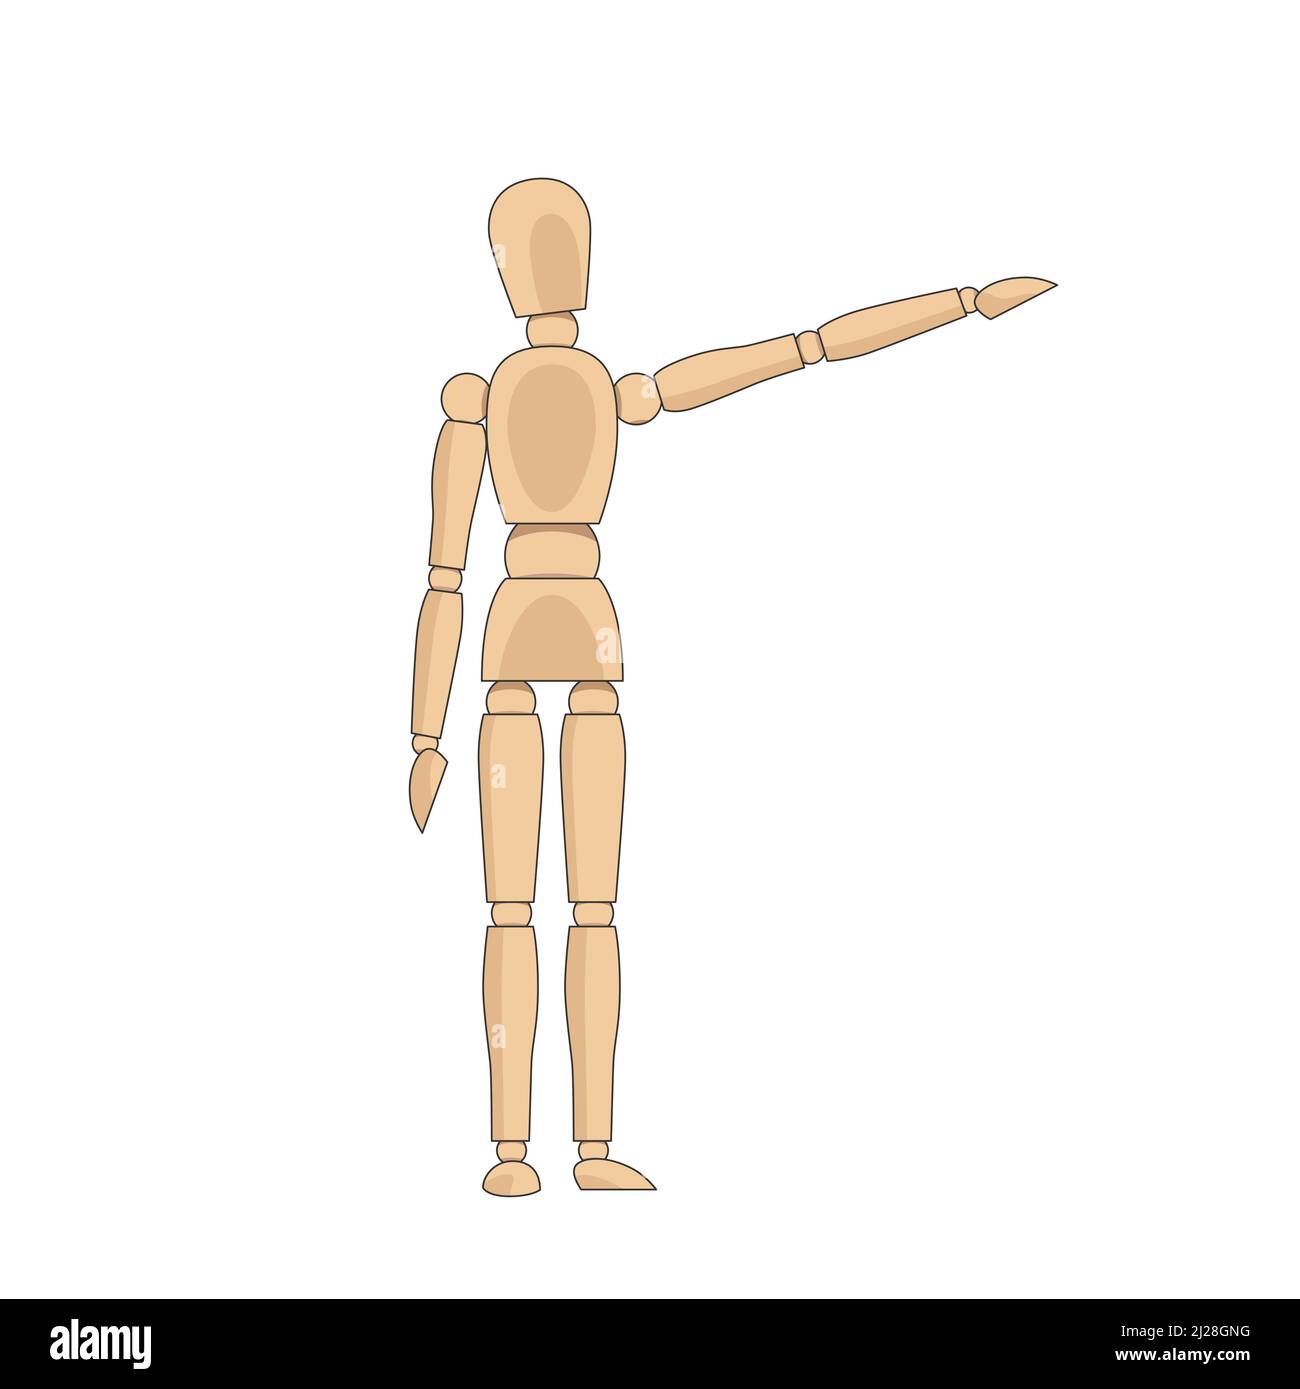 Modello uomo in legno, manichino per disegnare anatomia del corpo umano  posa. Mannequin controllo fittizio figura vettore semplice illustrazione  stock immagine Immagine e Vettoriale - Alamy